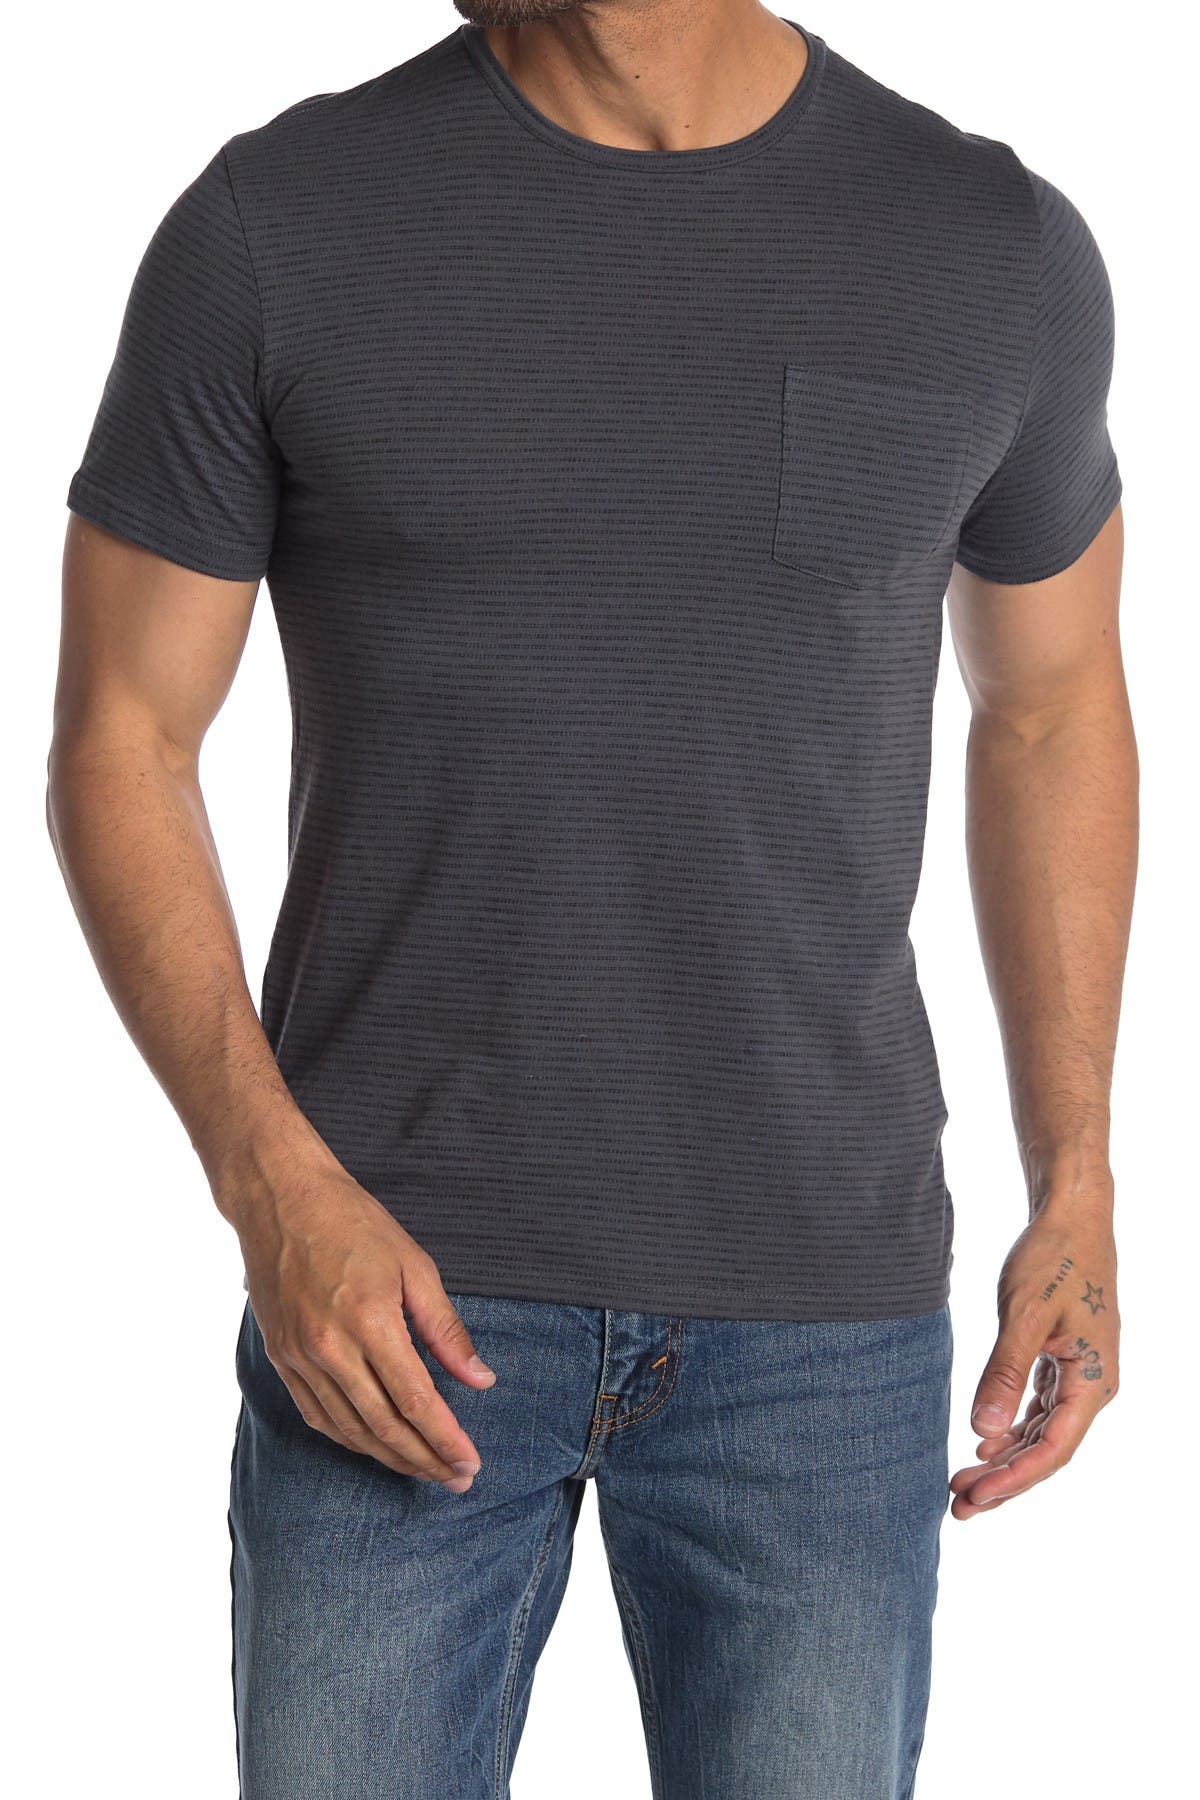 Abound Short Sleeve Striped Pocket T-shirt In Medium Grey